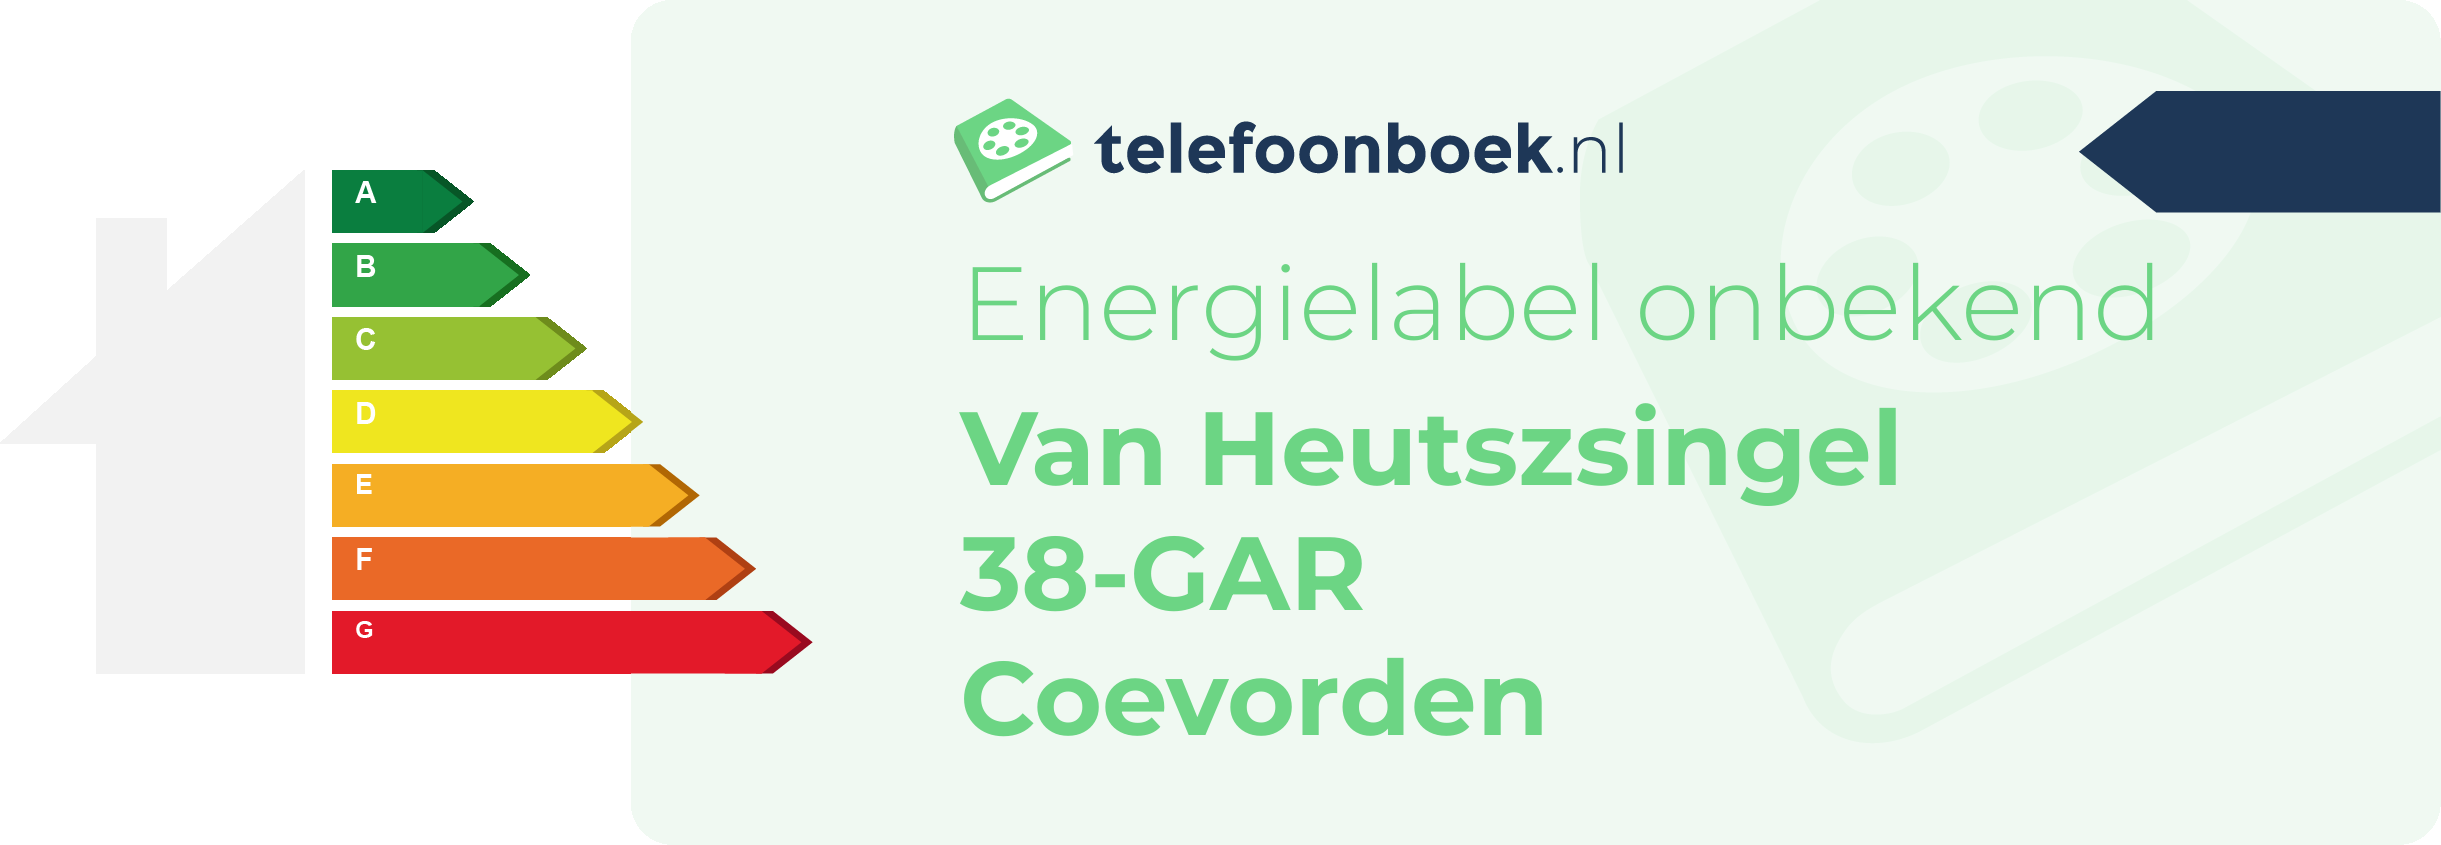 Energielabel Van Heutszsingel 38-GAR Coevorden